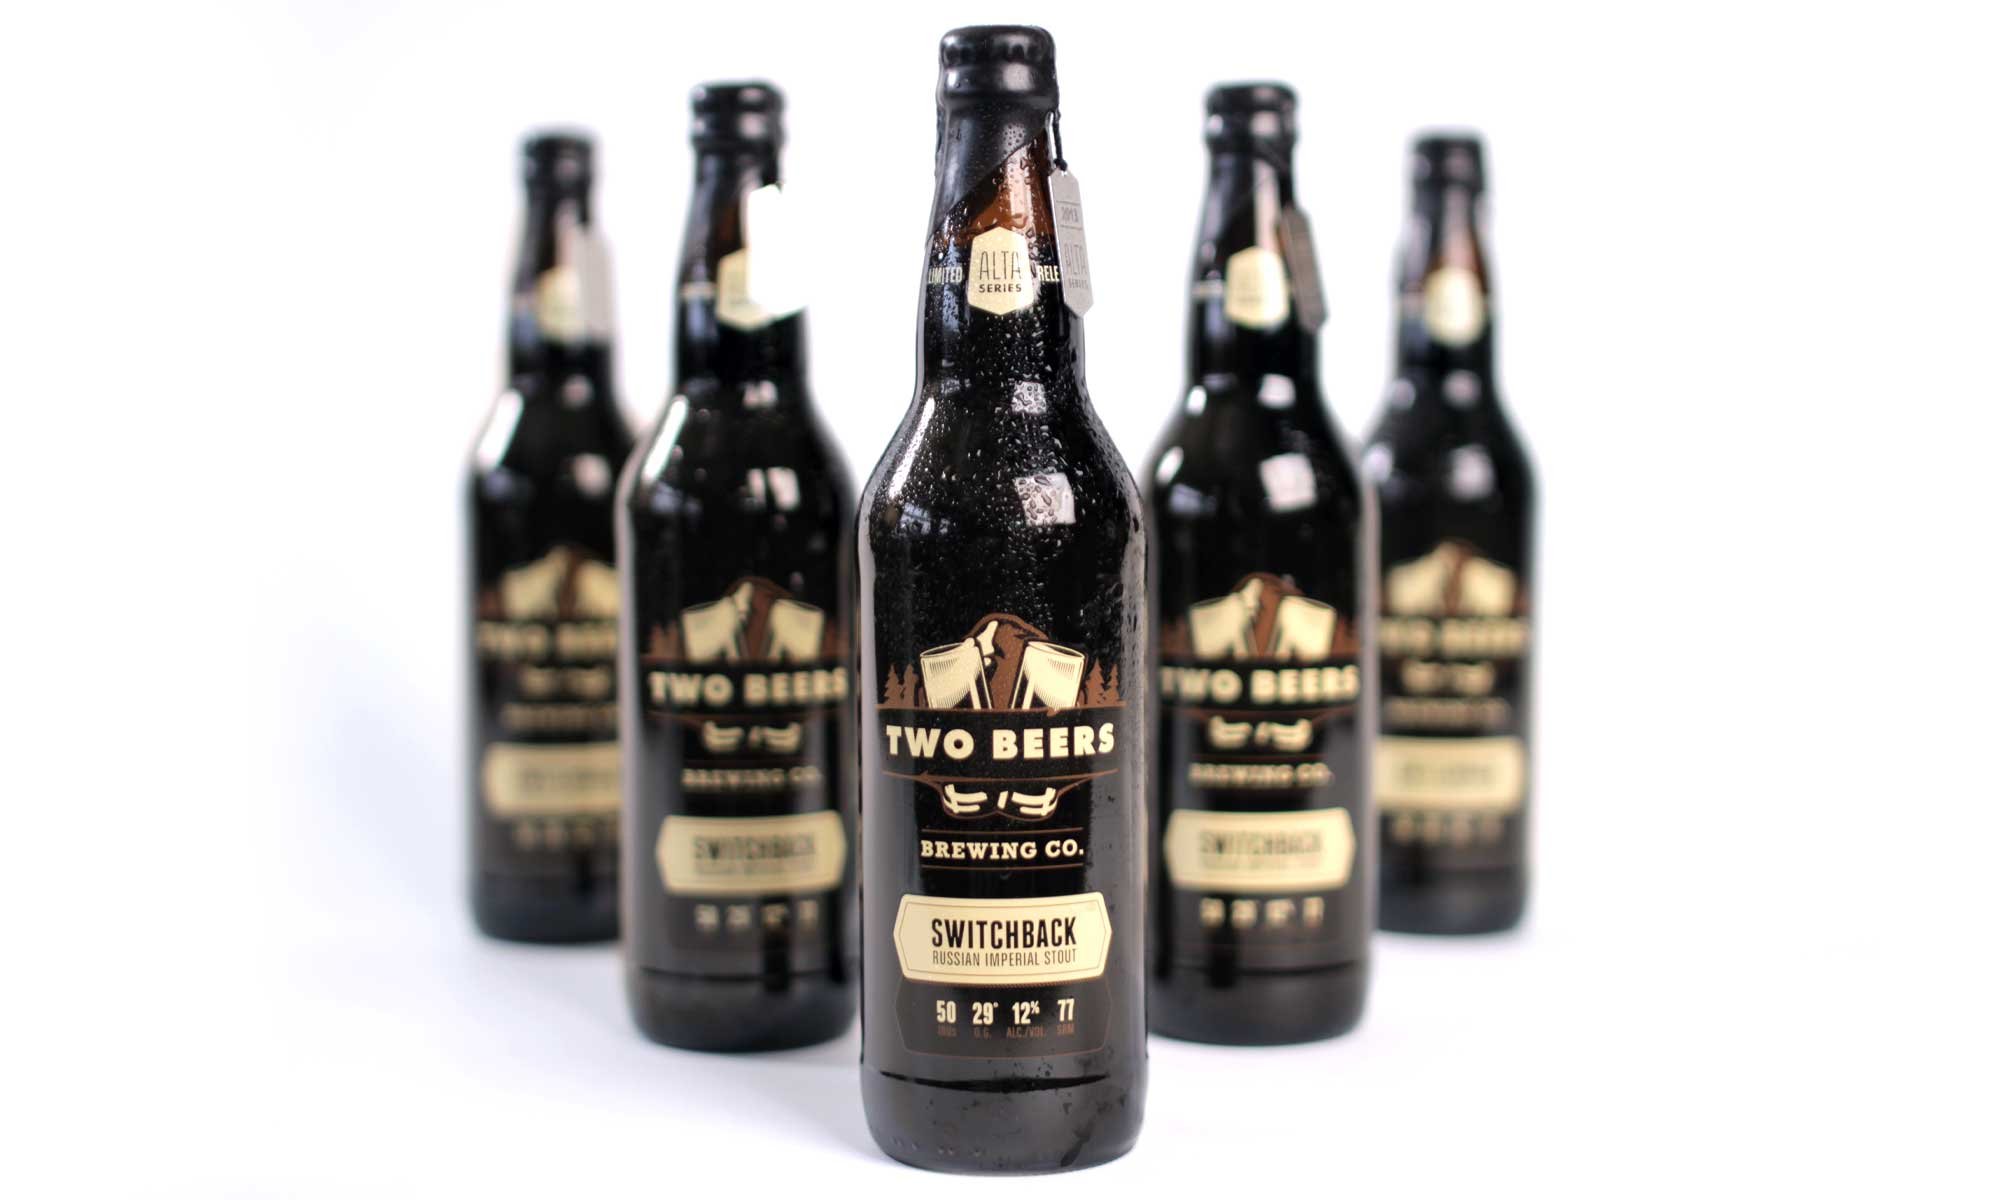 Two-Beers-Alta-Series-Stout-Beer-Bottle-Packaging.jpg